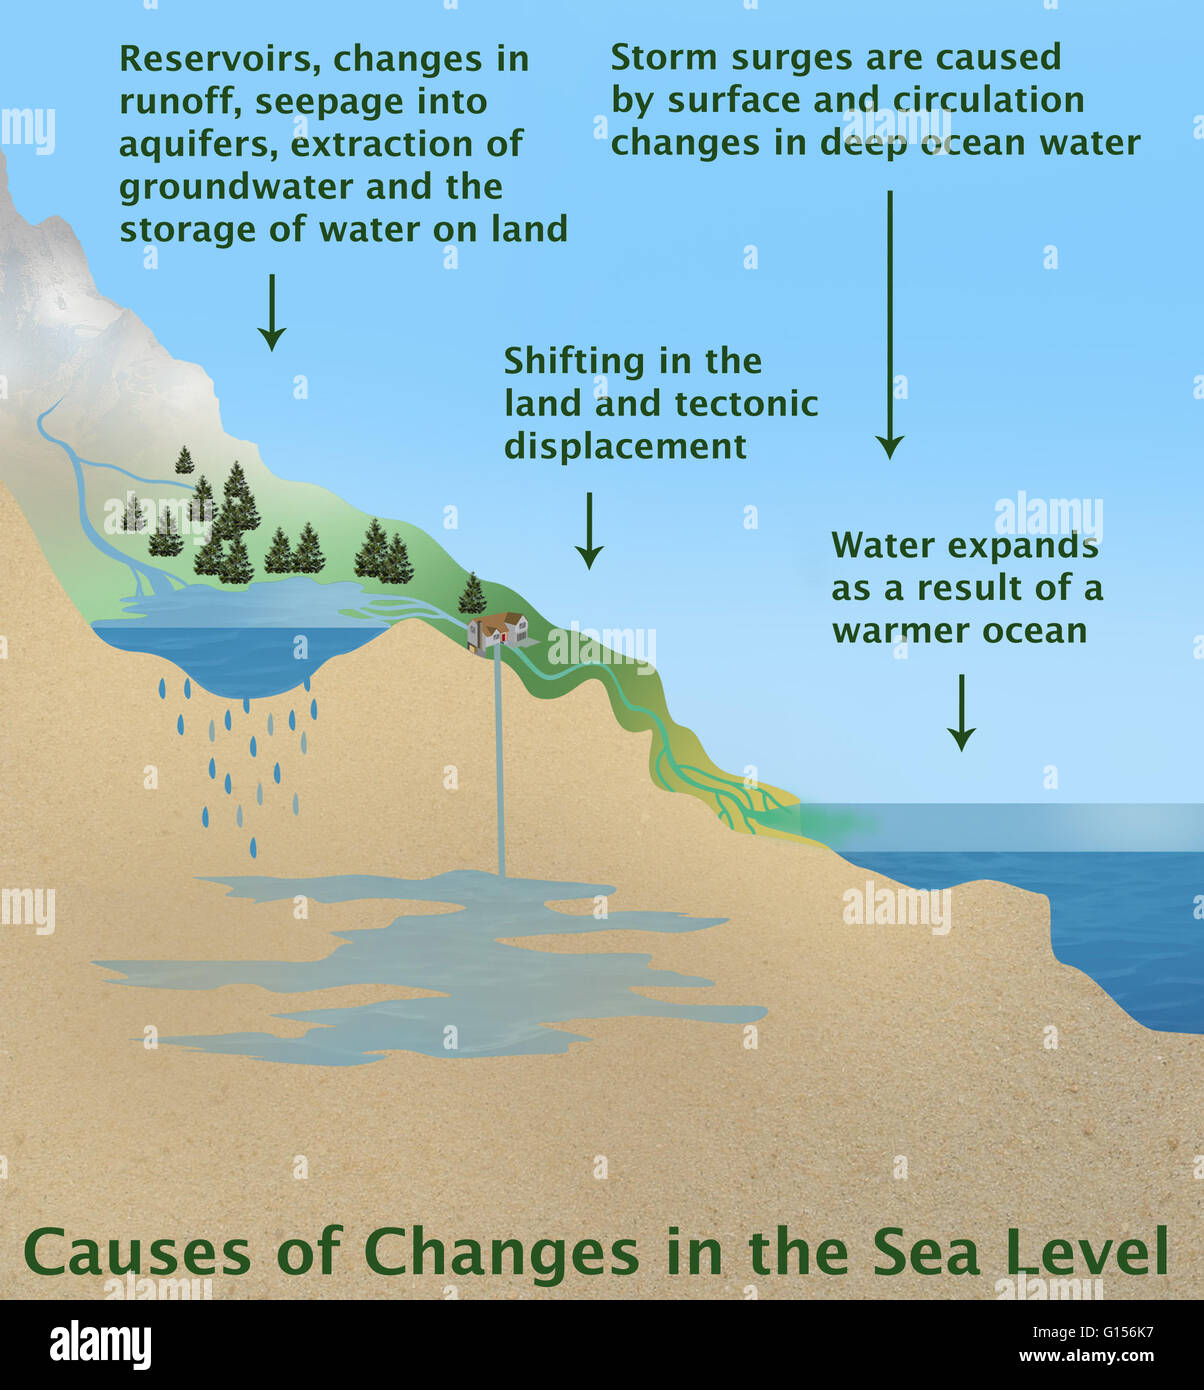 Darstellung der verschiedenen Ursachen für Veränderungen des Meeresspiegels. Auf der linken Seite vertreten: Stauseen, Änderungen im Ablauf, Versickerung in Grundwasserleiter, Gewinnung von Grundwasser und die Speicherung von Wasser auf dem Land. Der zweite Pfeil von links zeigt einen Wandel ich Stockfoto